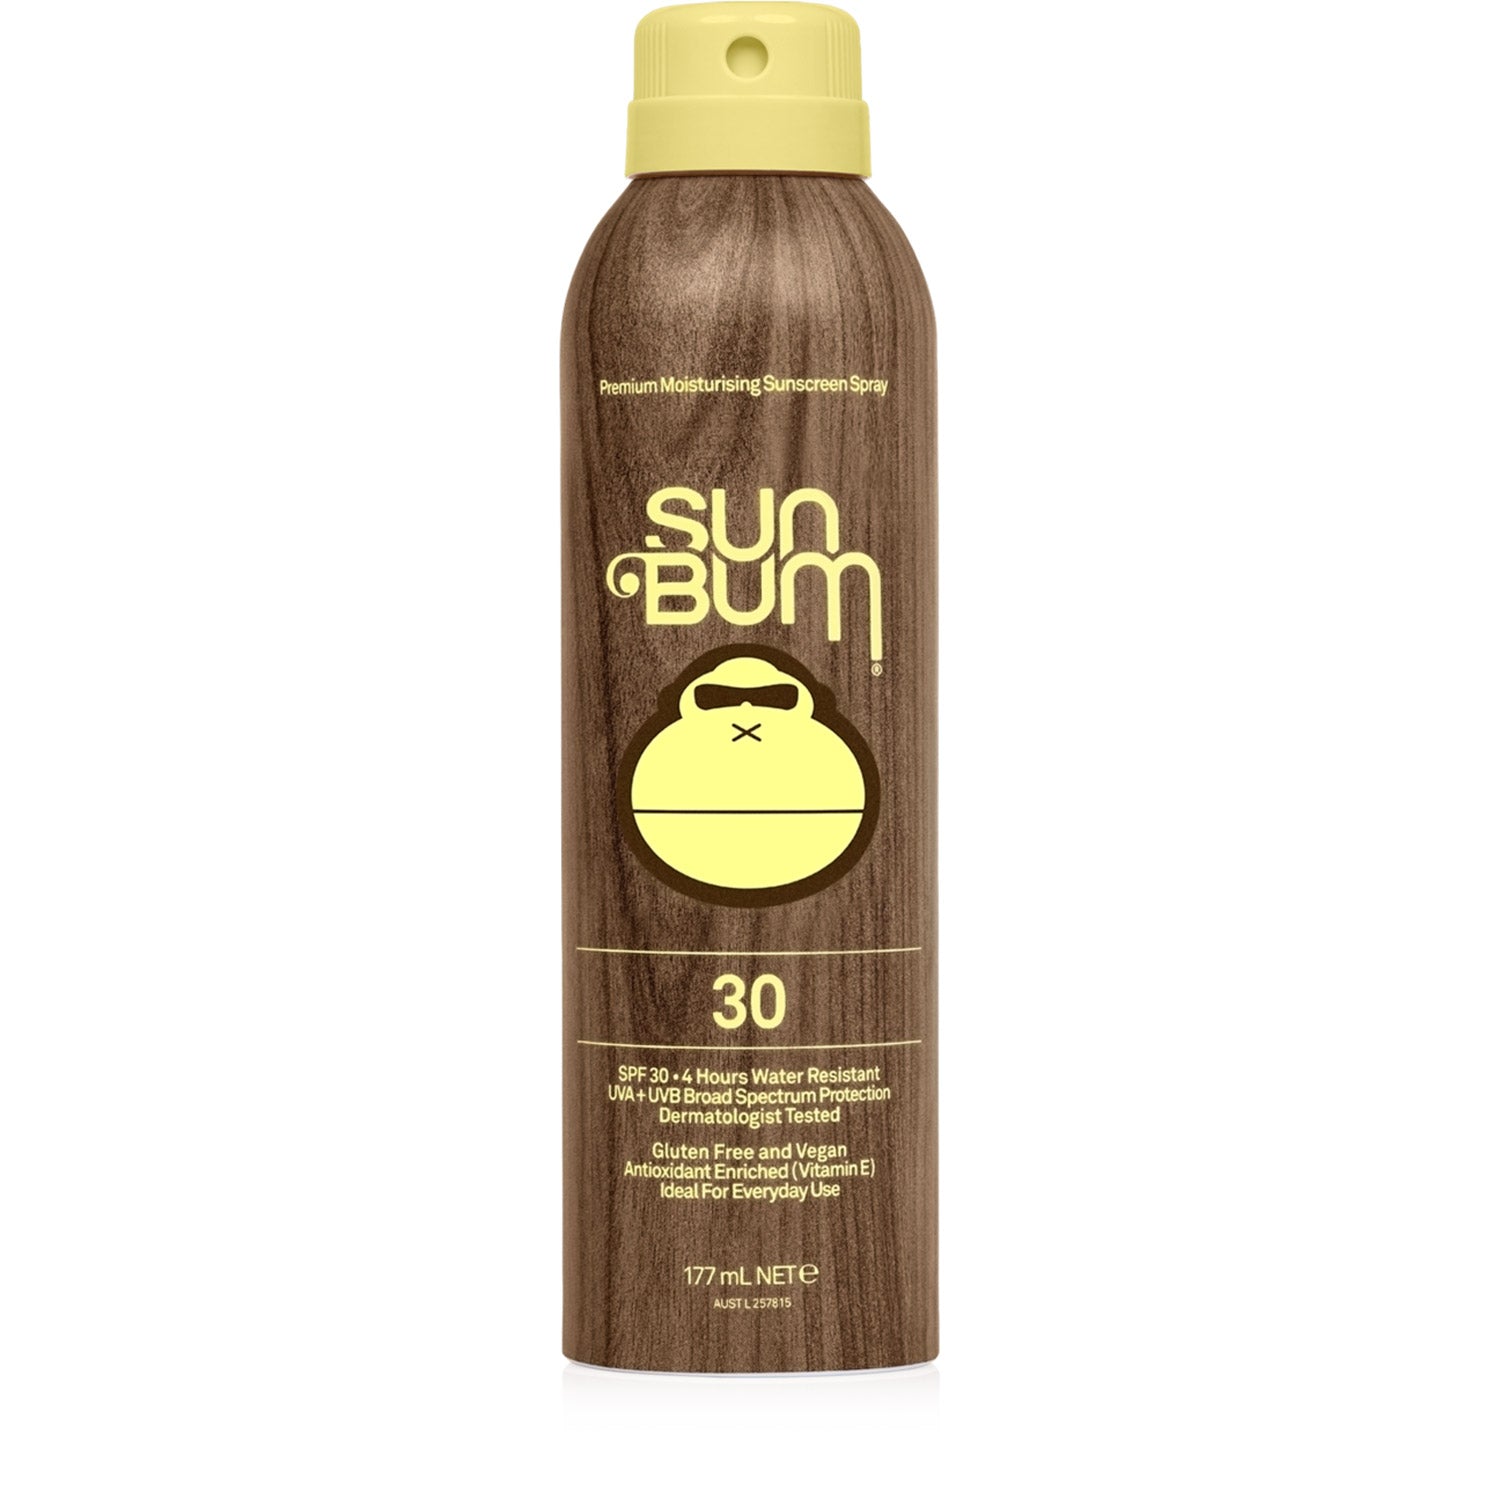 Original SPF 30 Sunscreen Spray 177ML